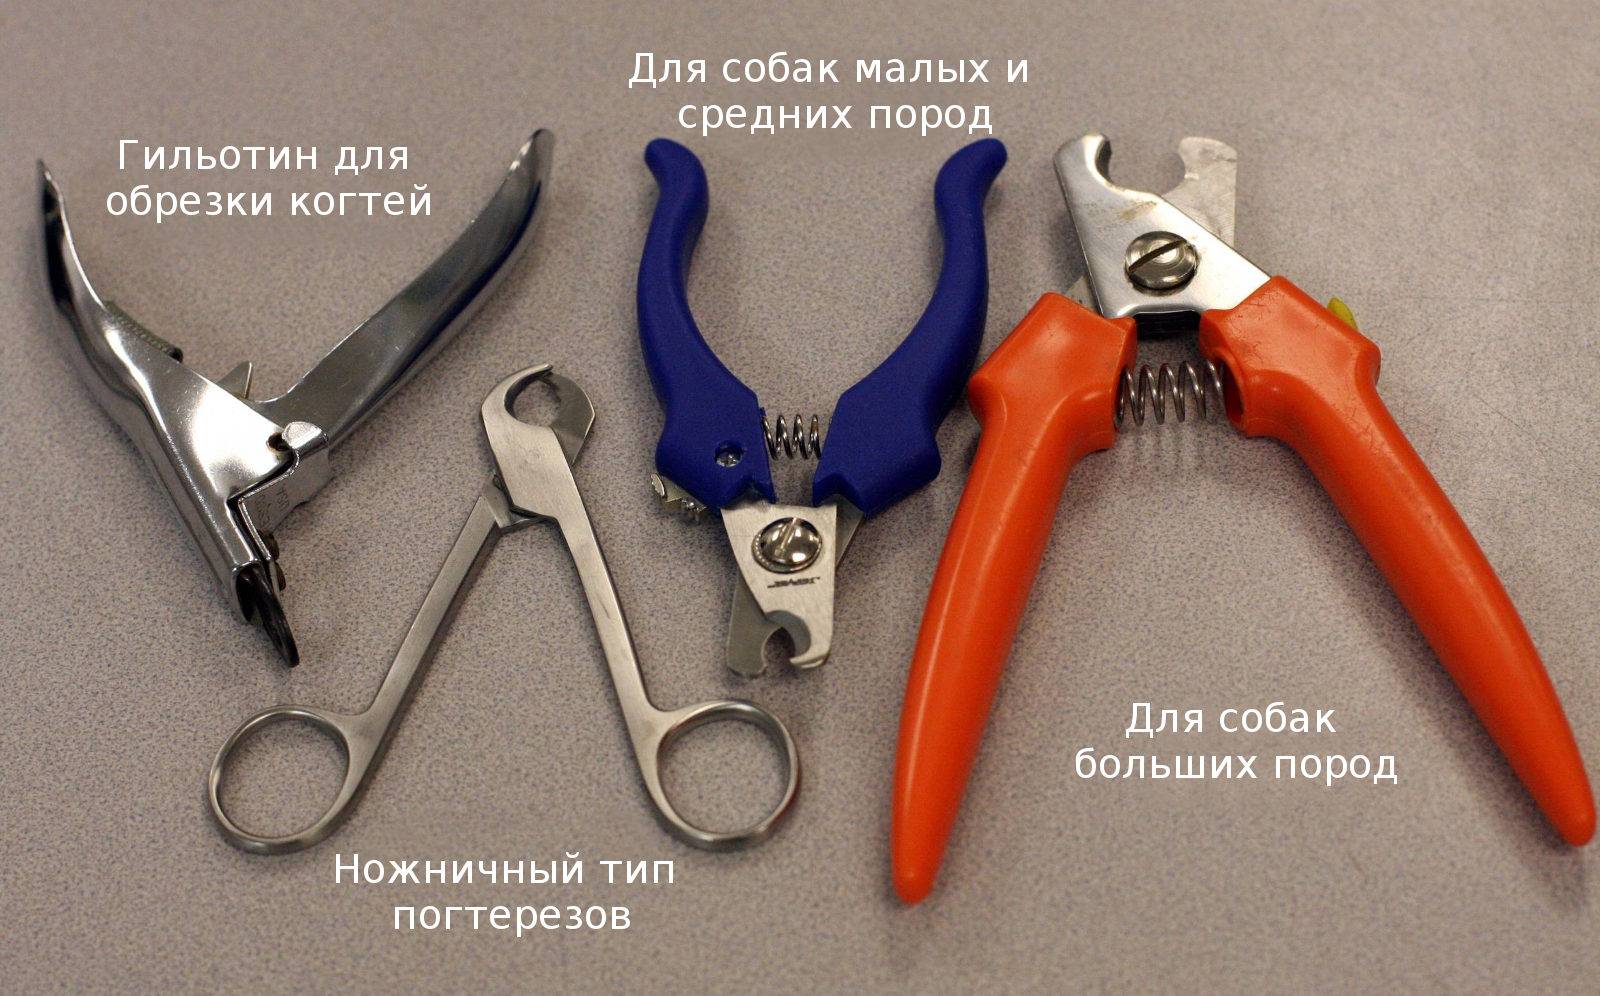 Уход за когтями и лапами собак: подрезание, особенности обработки зимой, какие инструменты и предметы требуются, можно ли подстричь обычными ножницами для ногтей